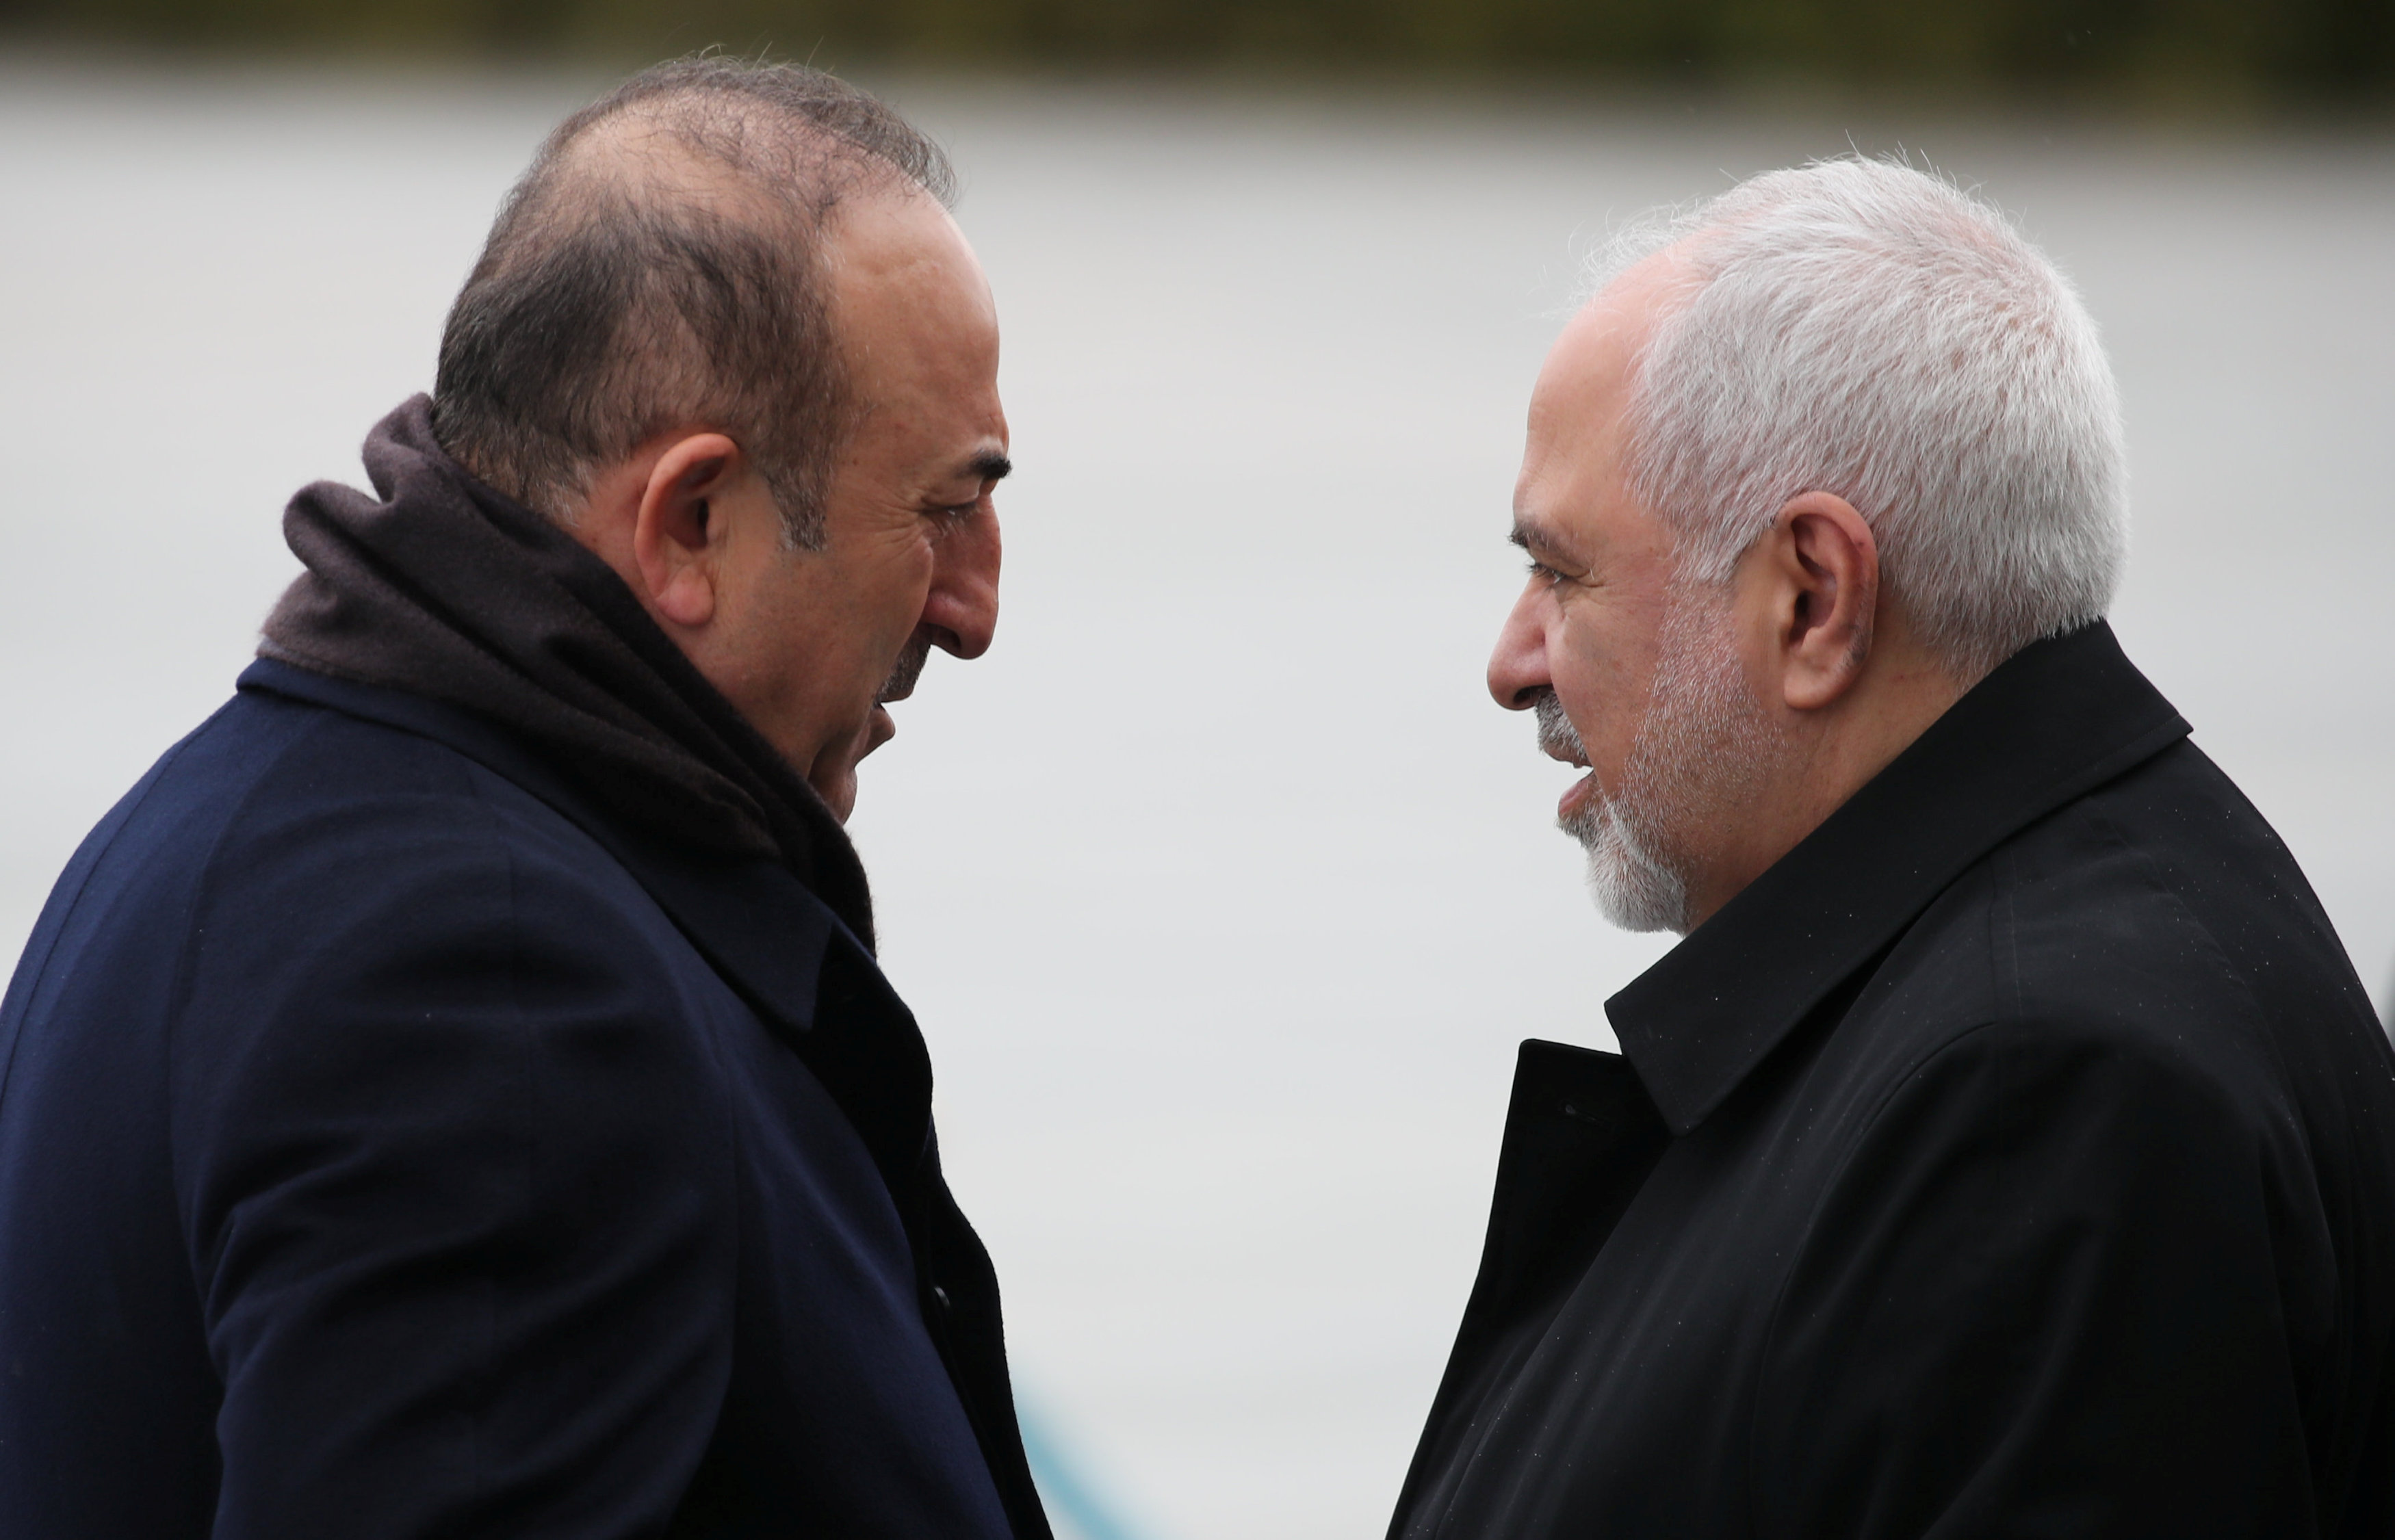 دیدار وزیران امور خارجه ایران و ترکیه